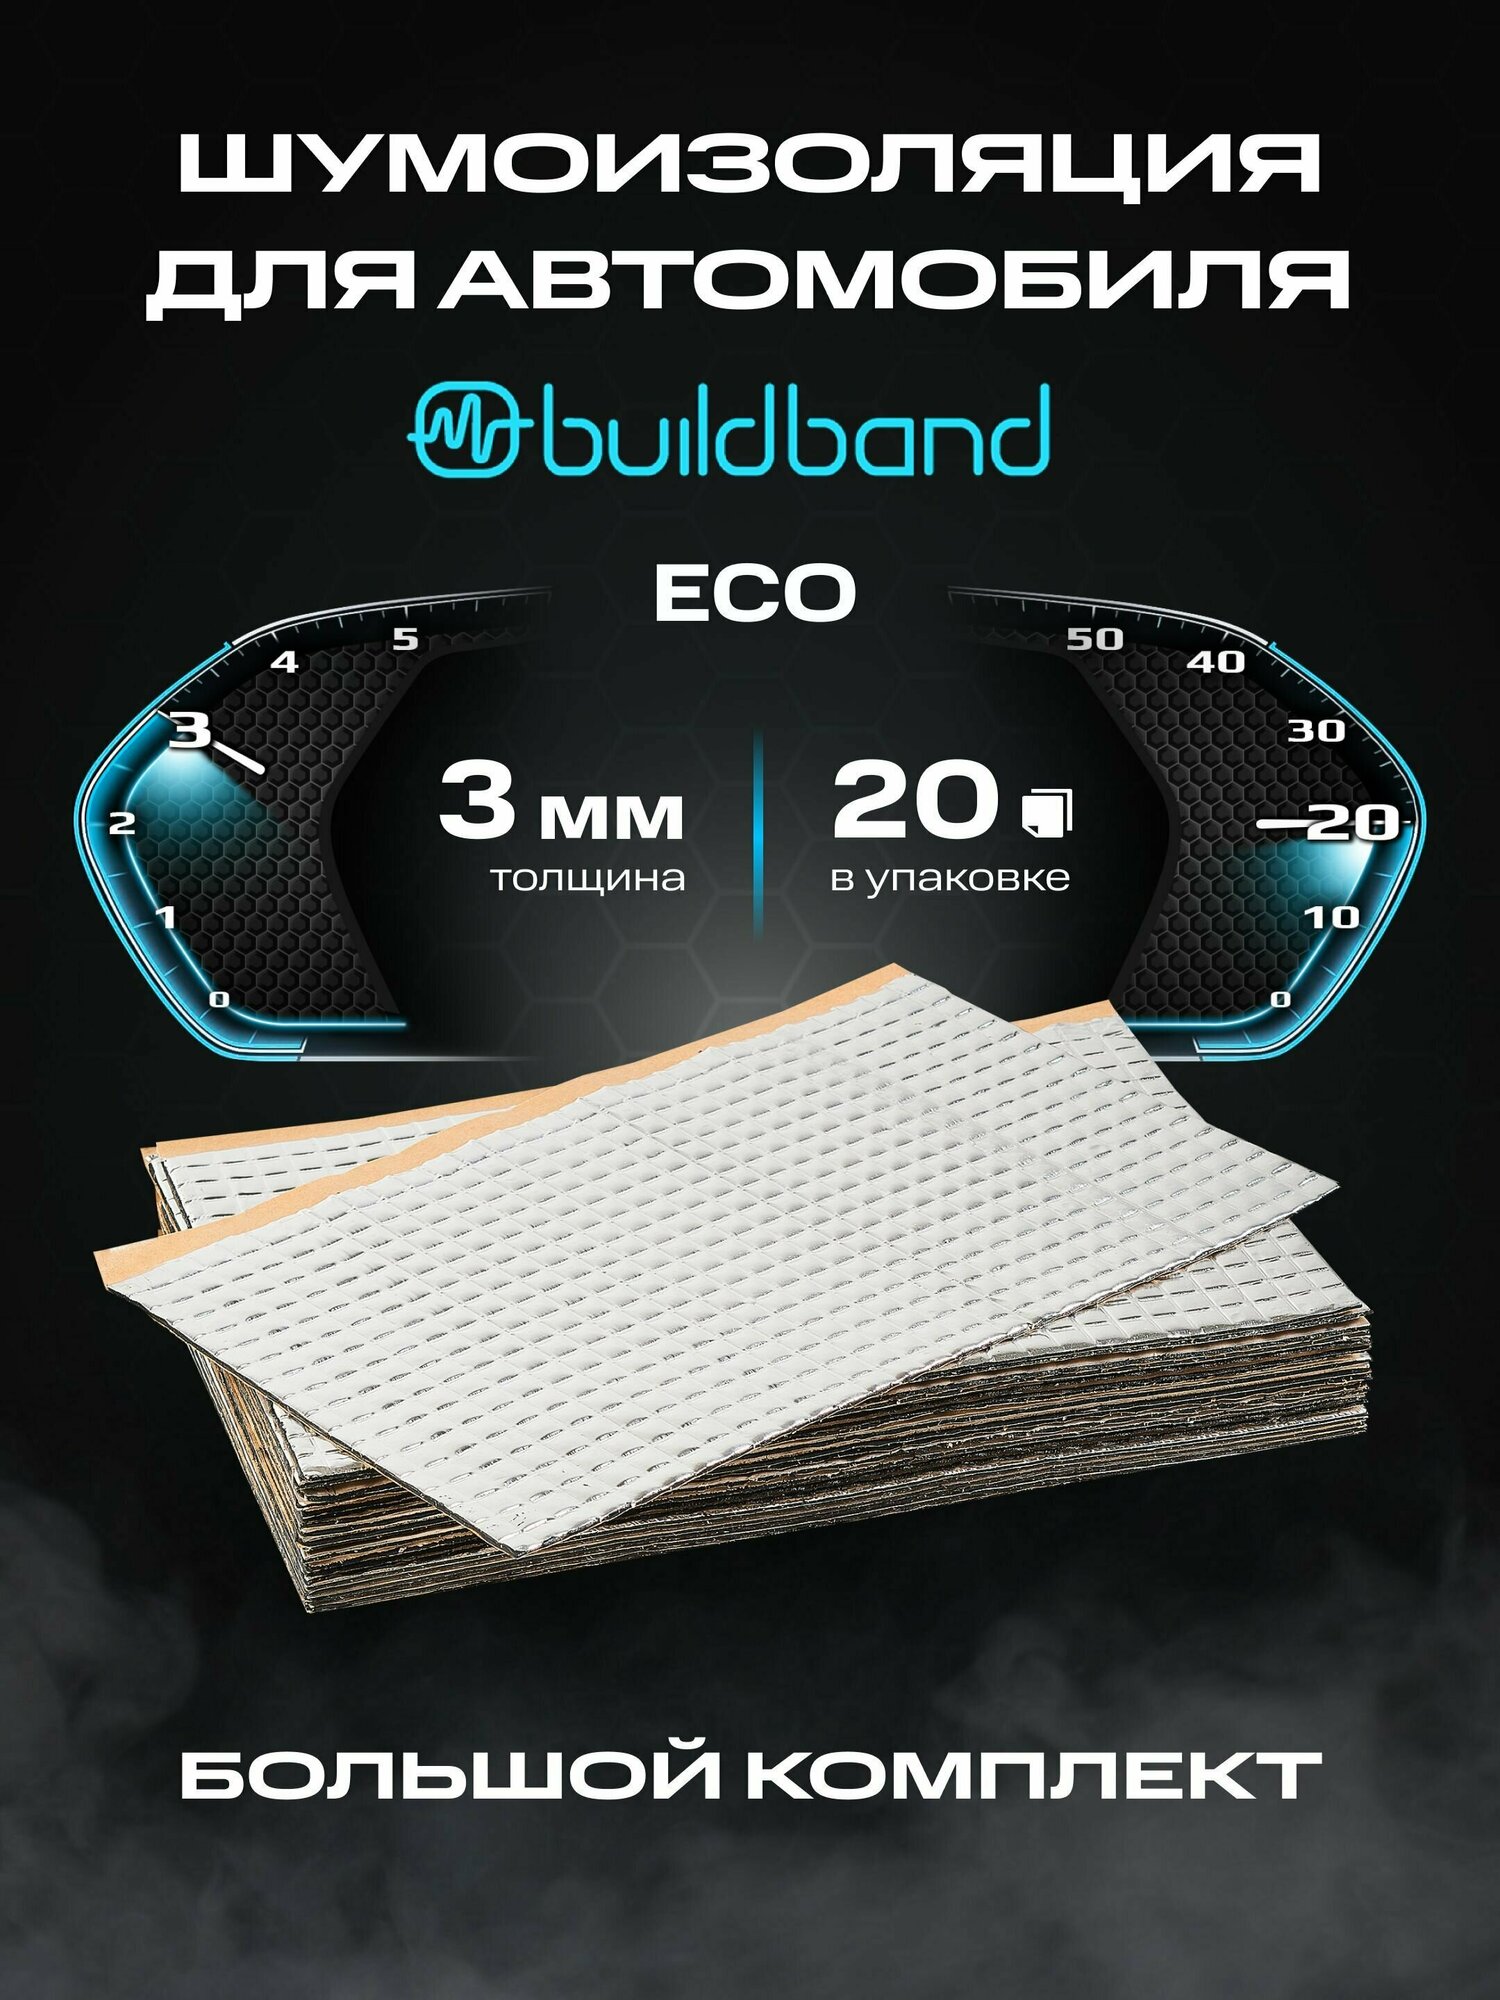 Шумоизоляция buildband ECO 3 комплект 10 листов/ Шумка для машины самоклеящаяся/вибропласт звукоизоляция